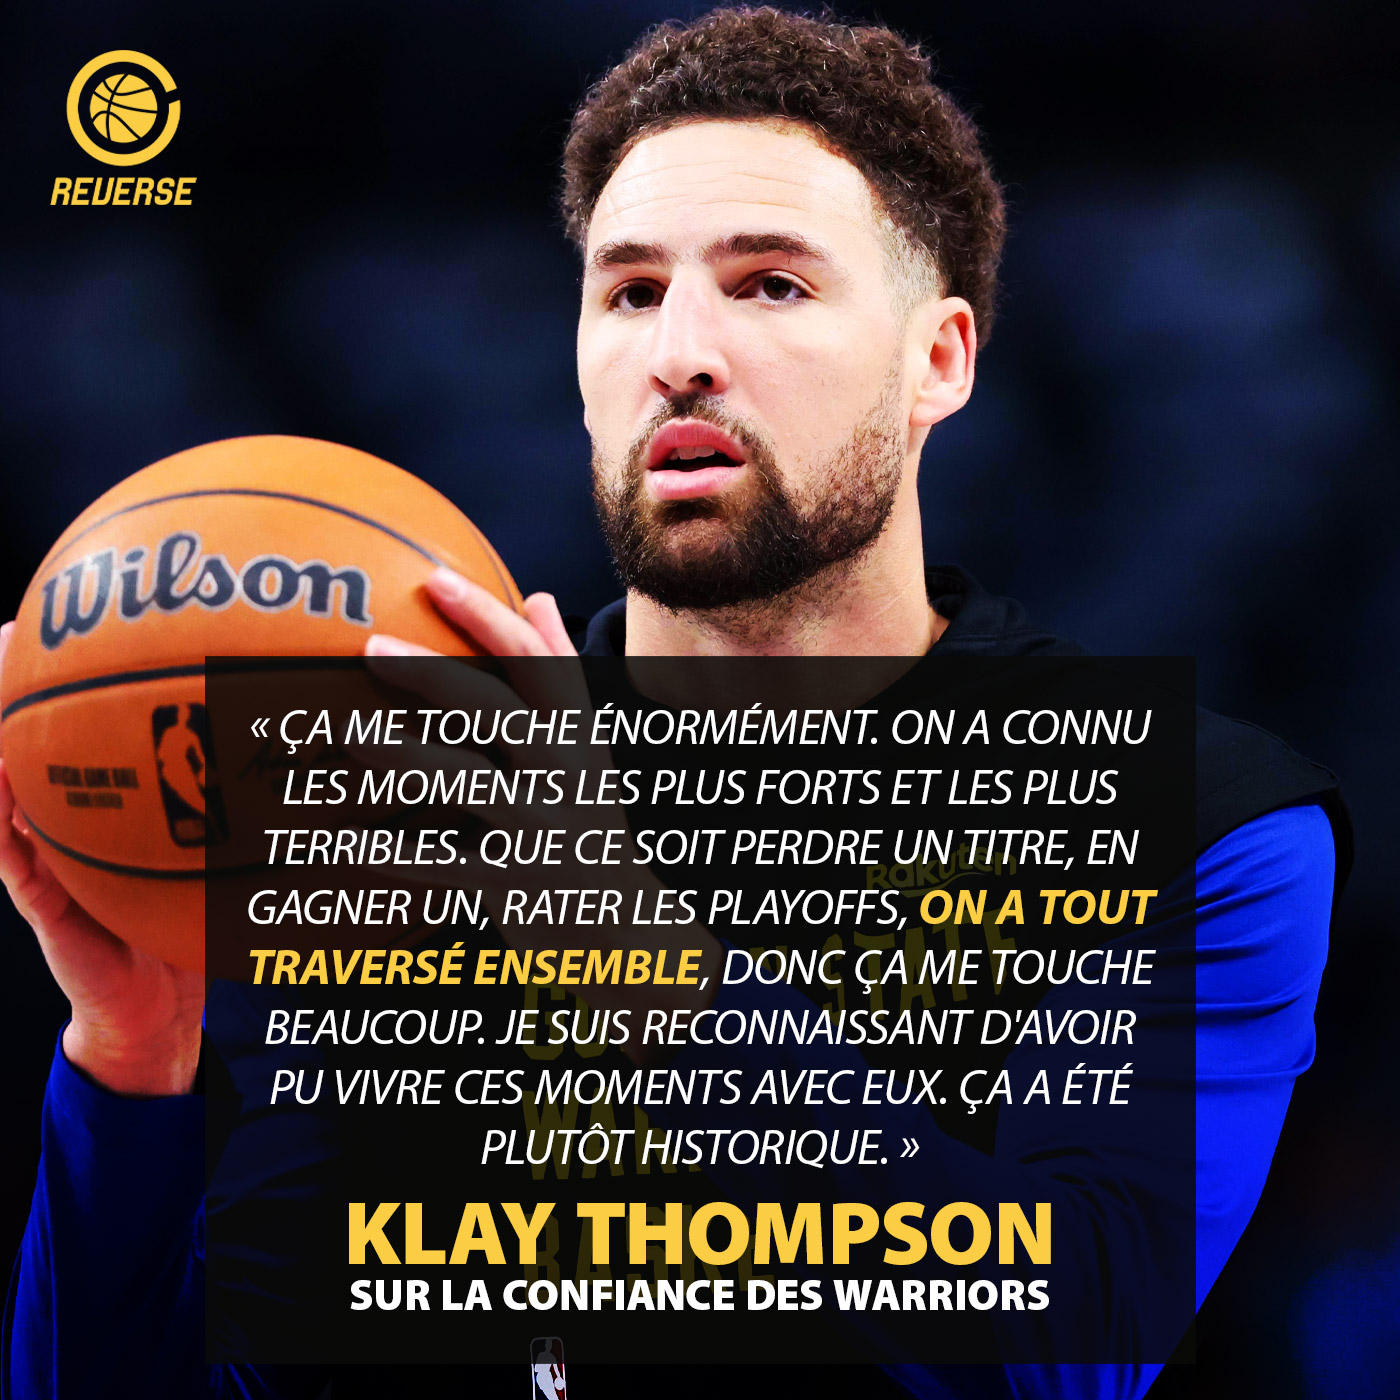 Klay Thompson et la confiance des Warriors